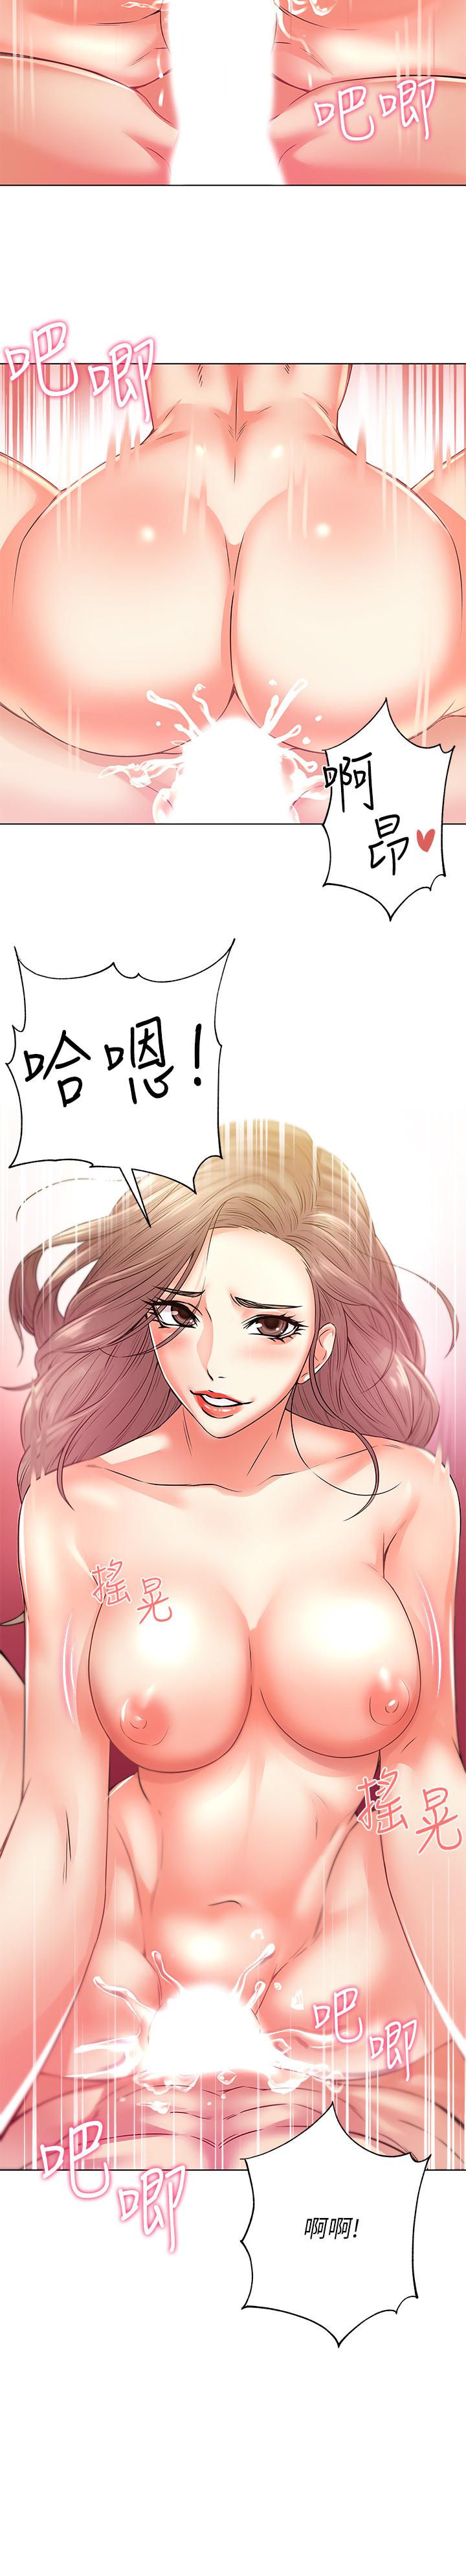 韩国污漫画 超市的漂亮姐姐 第18话-难得一见的大雕 13